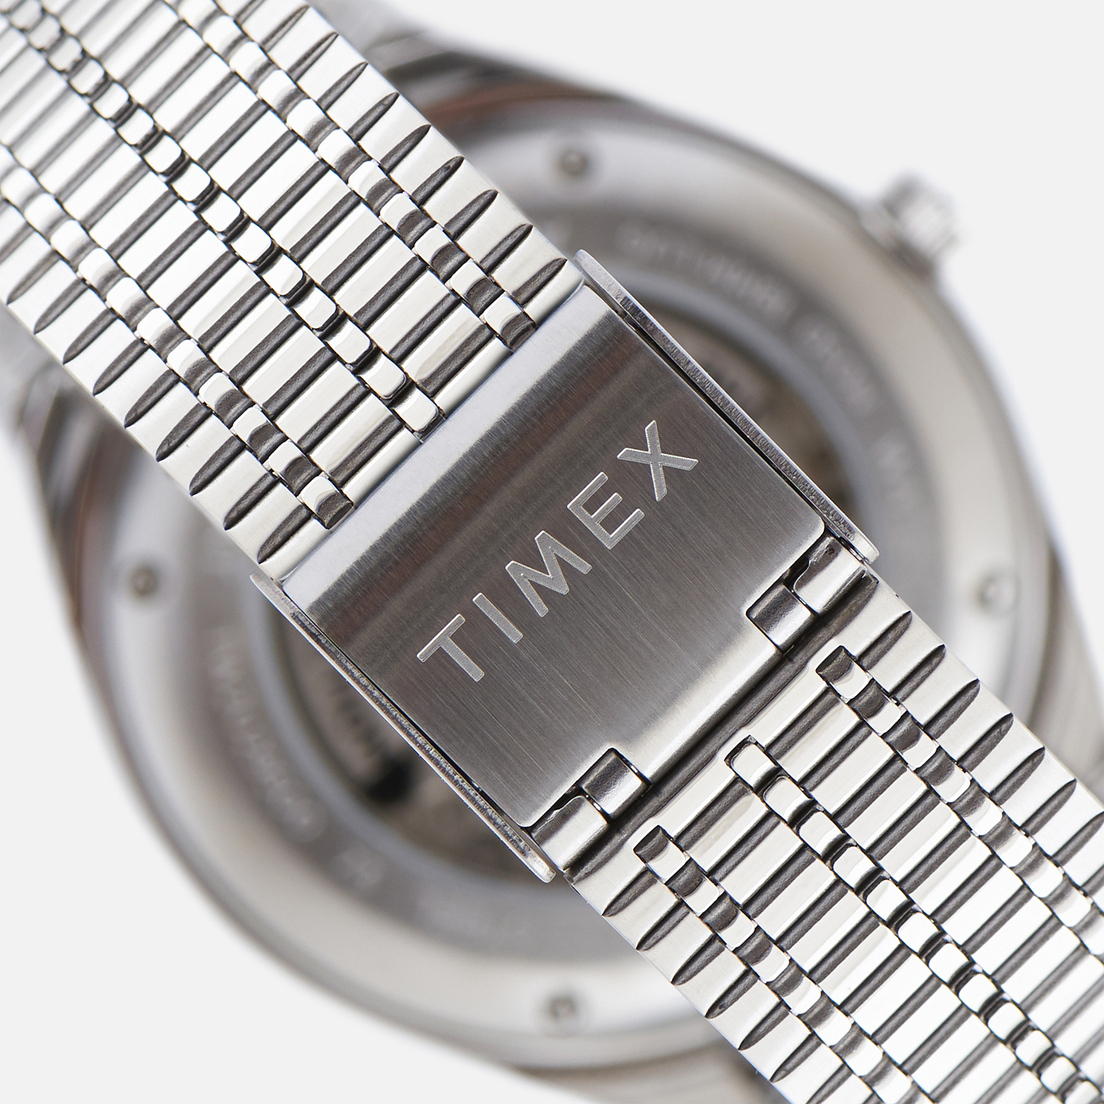 Timex Наручные часы M79